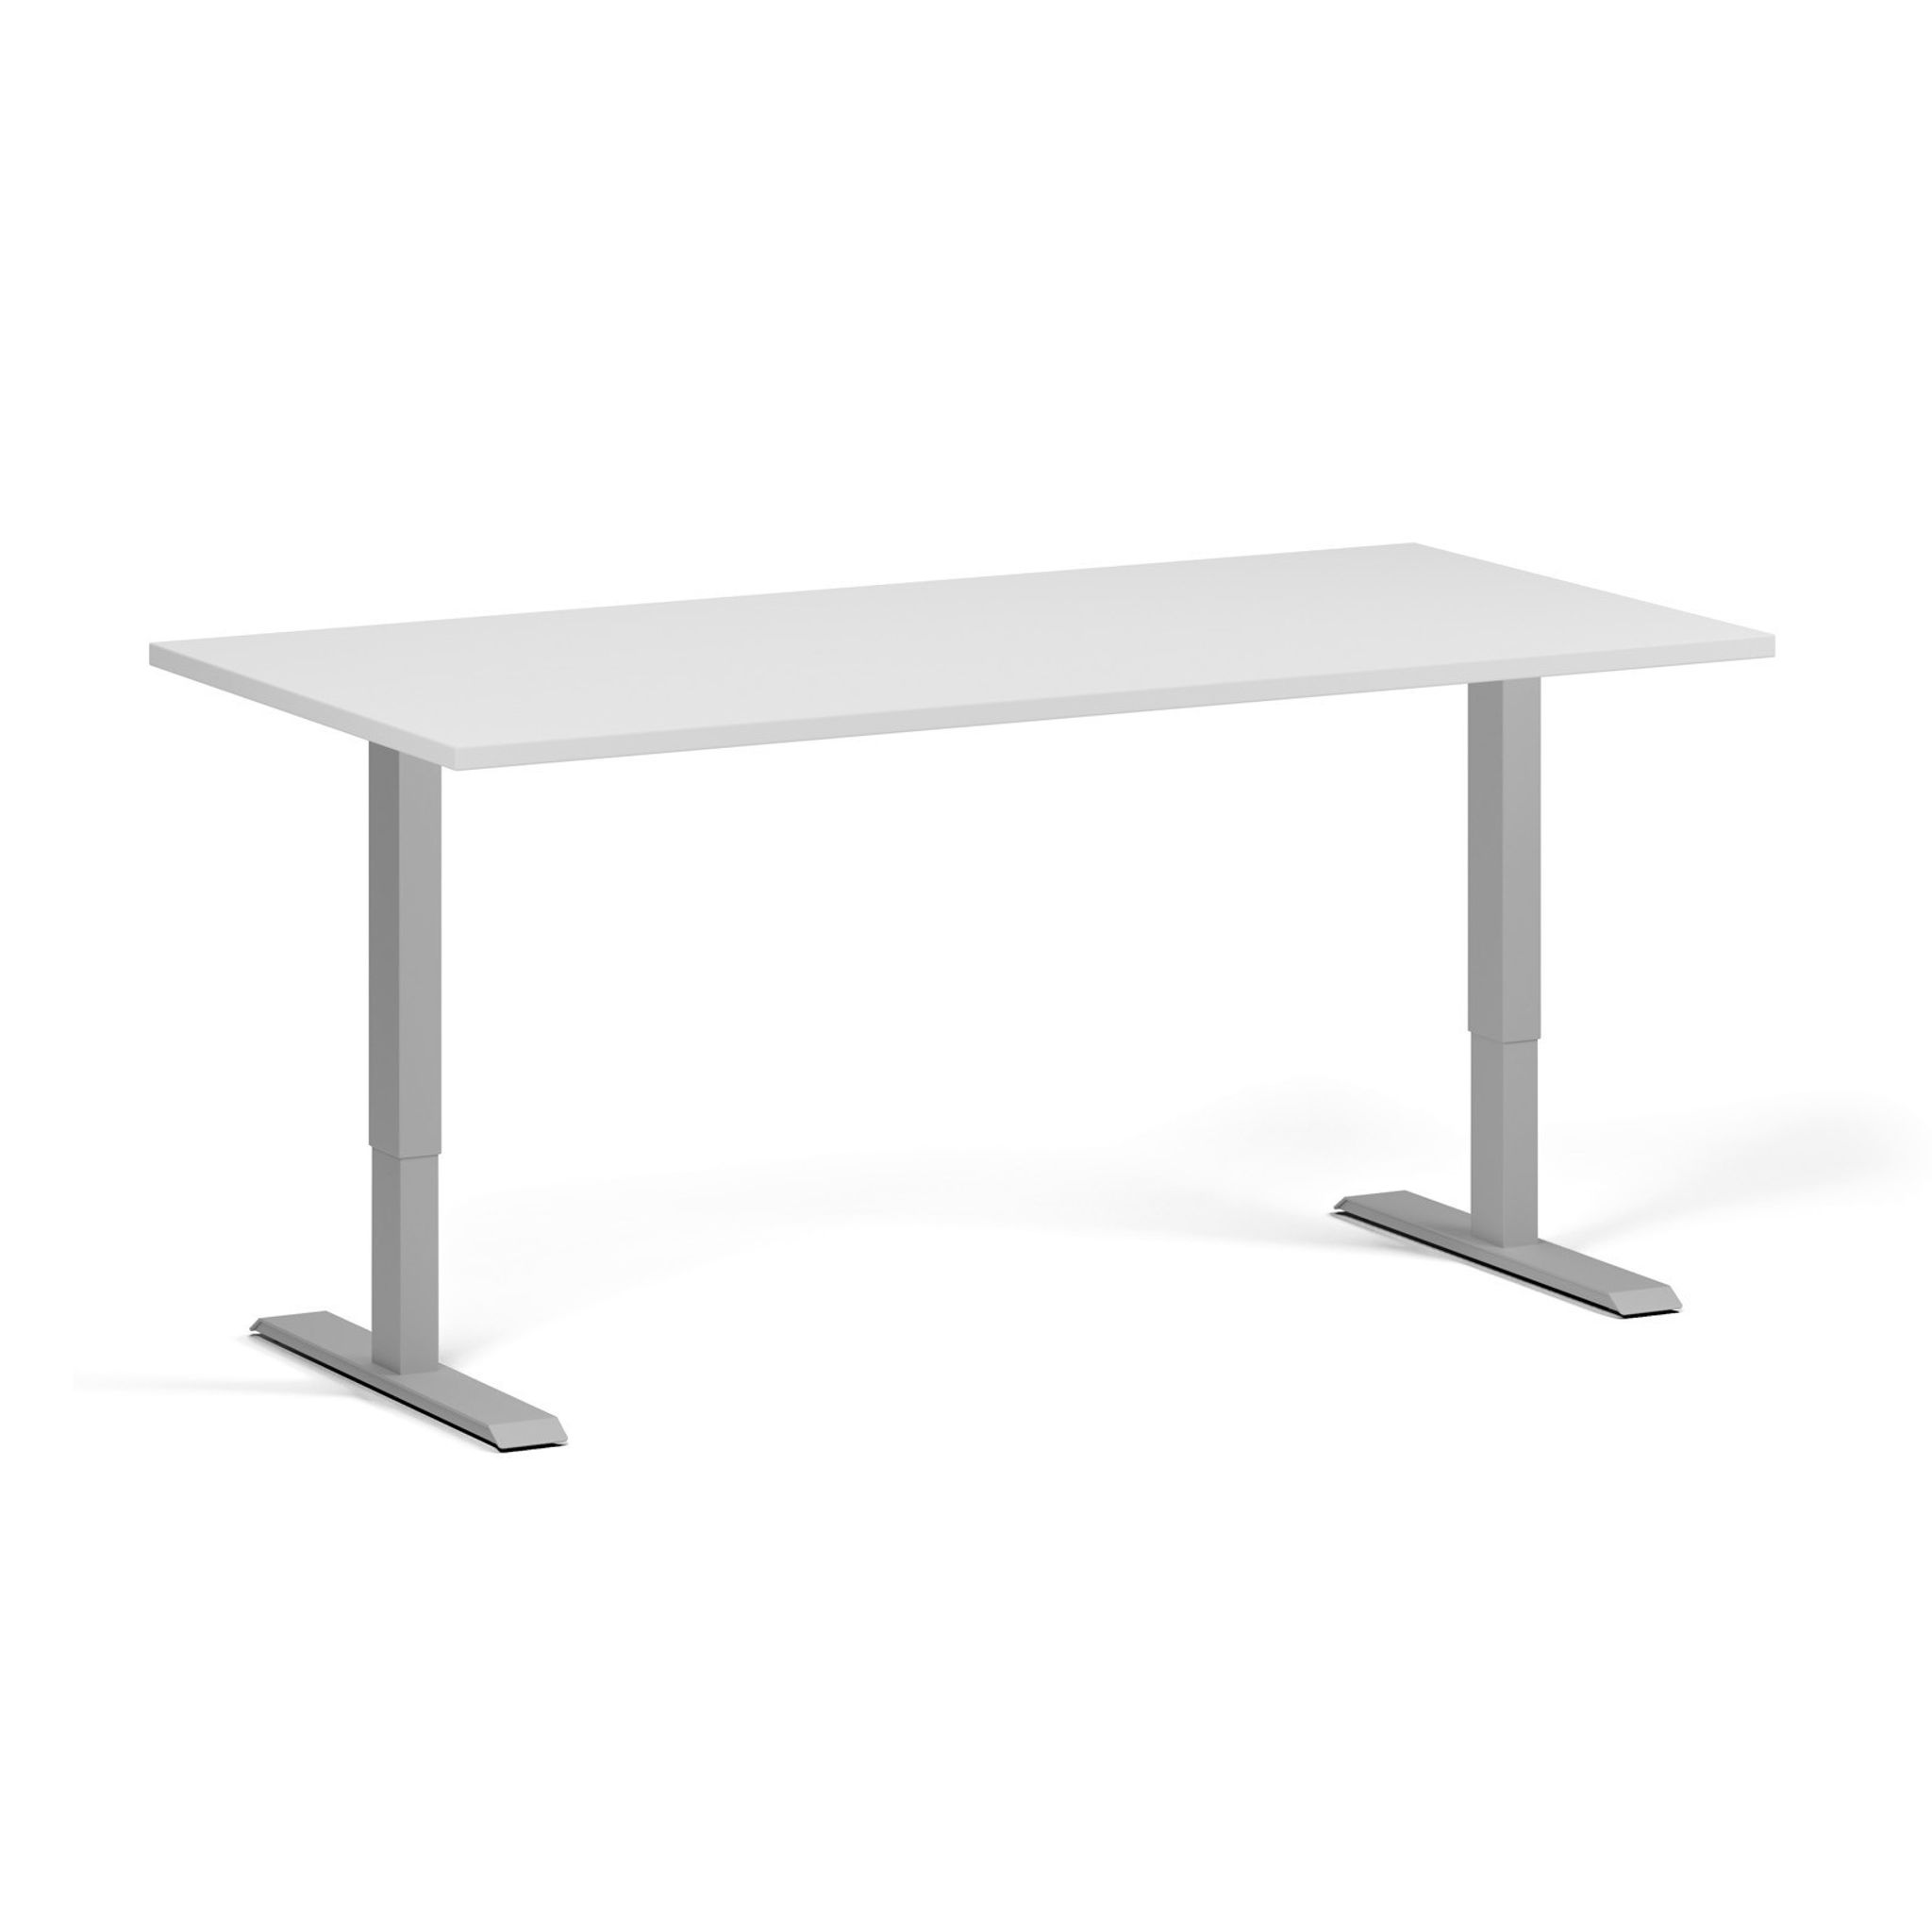 Výškově nastavitelný stůl, 1 motor, 745 - 1235 mm, deska 1600 x 800 mm, šedá podnož, bílá